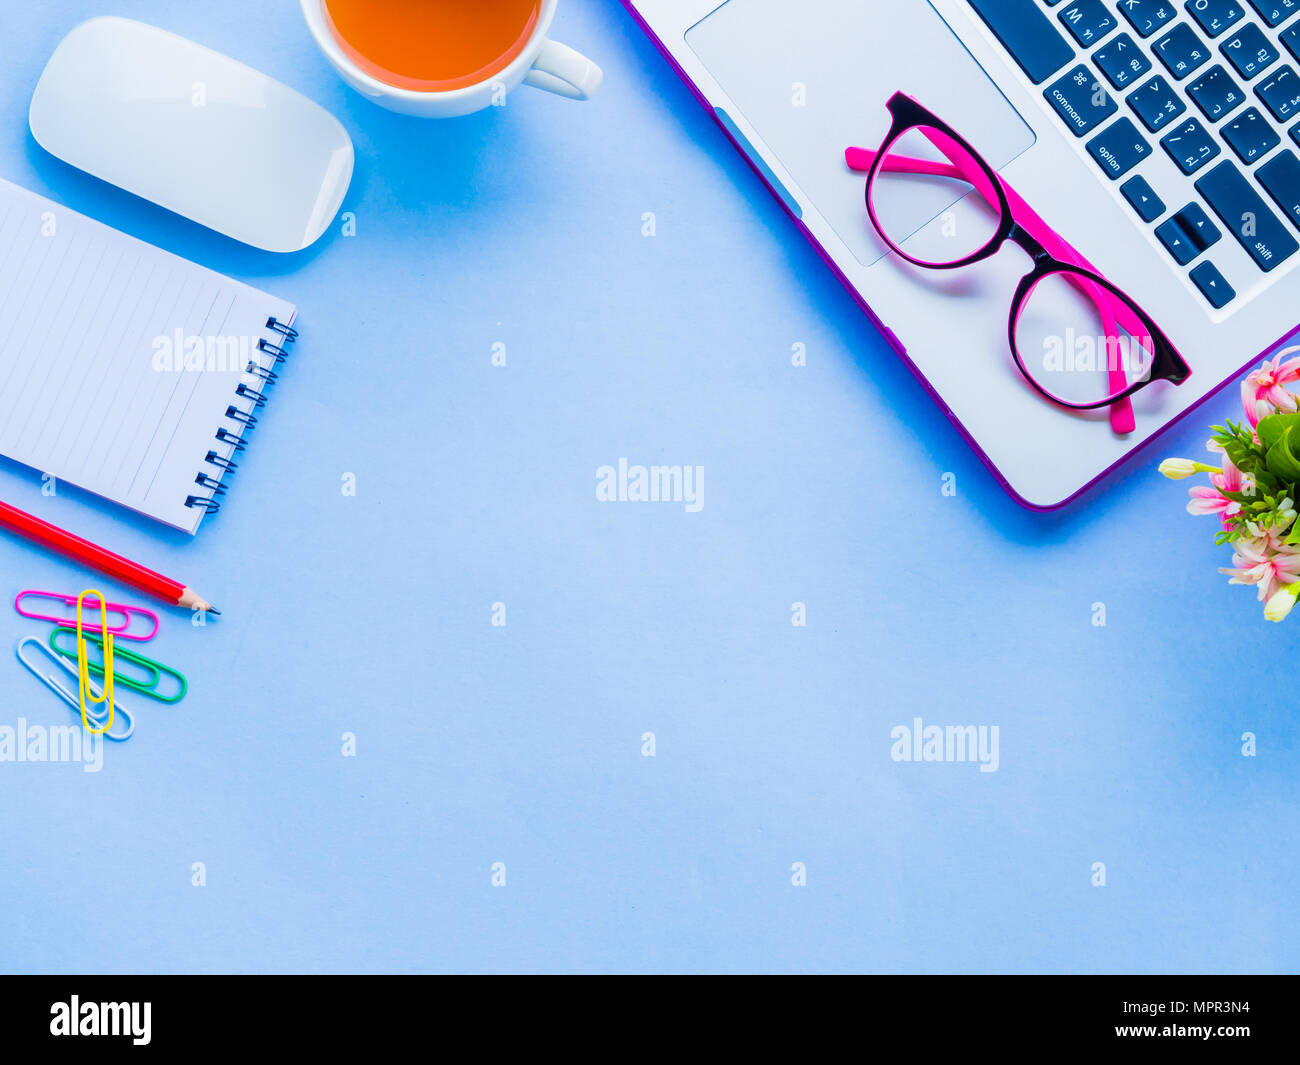 Vue de dessus de l'espace de bureau féminin avec accessoires de bureau avec ordinateur portable, carnet de notes, crayon rouge, café, fleurs, souris et lunettes roses sur bleu backg Banque D'Images